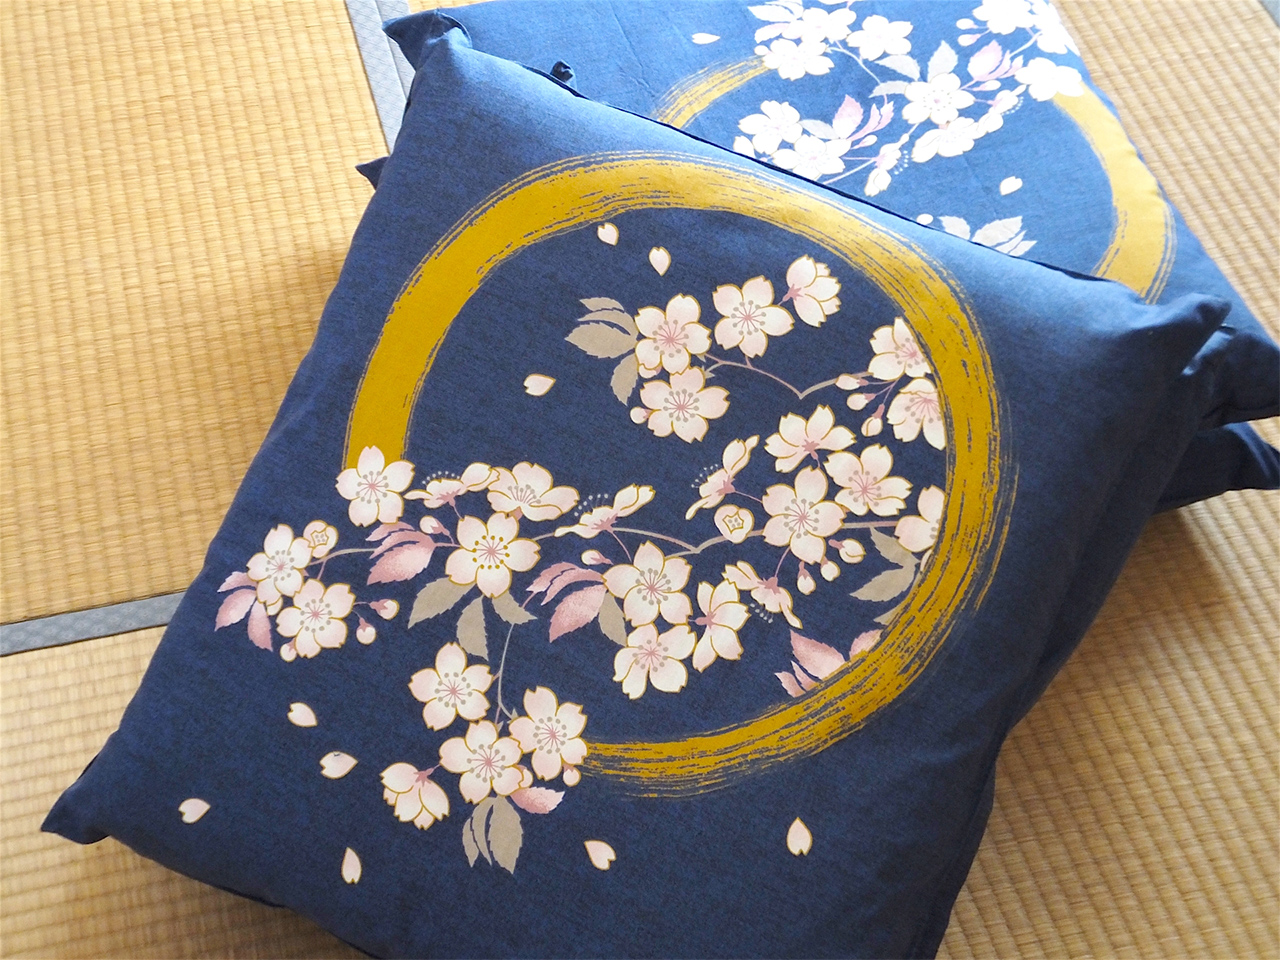 Japanese cushions (zabuton)